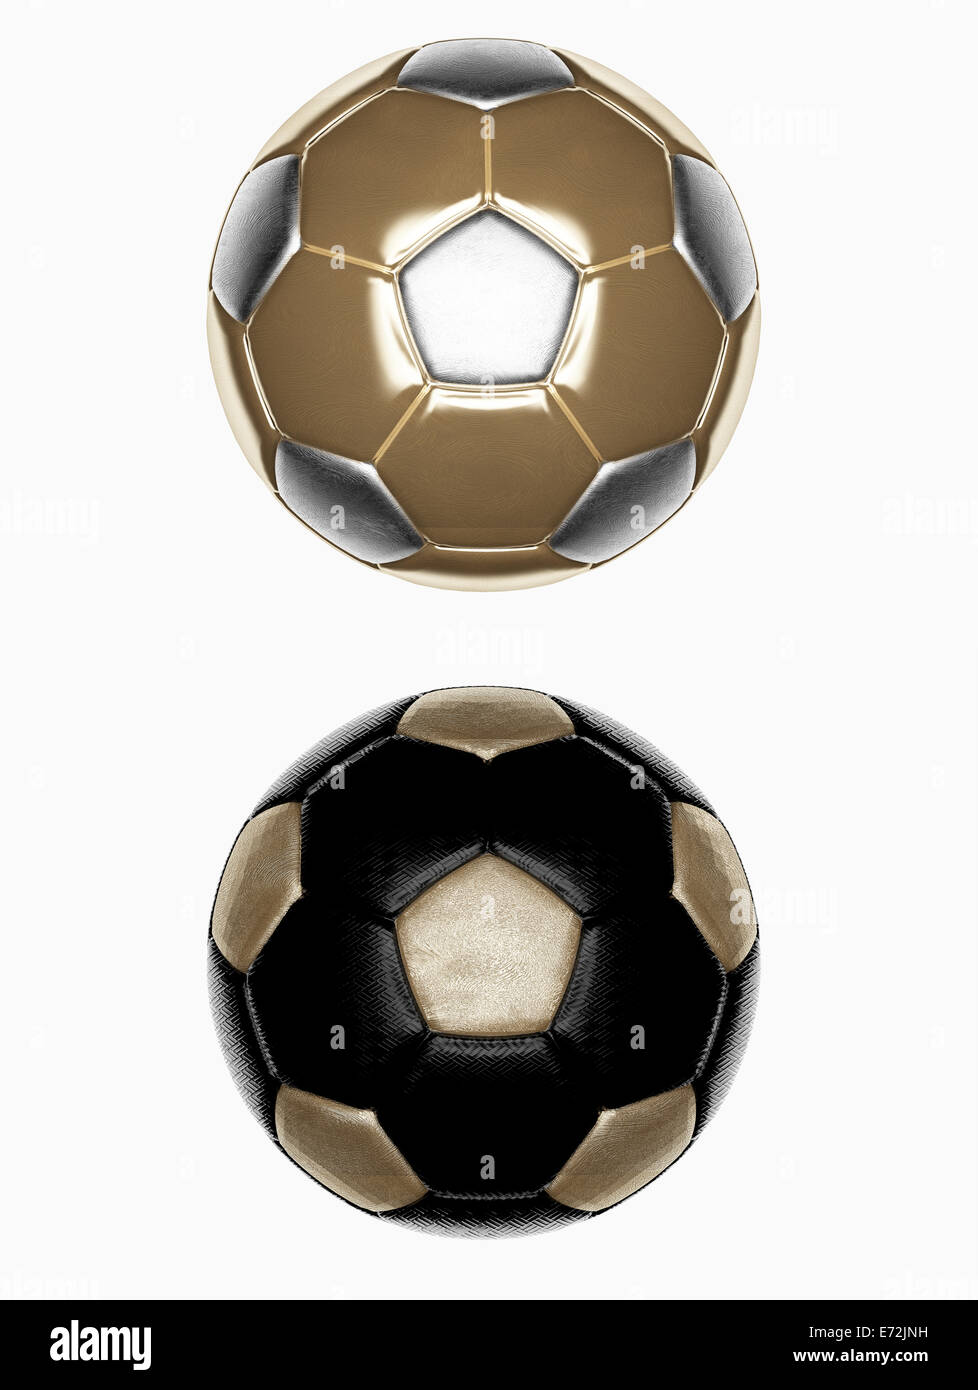 Set 2 ballons de soccer, isolé sur fond blanc Banque D'Images